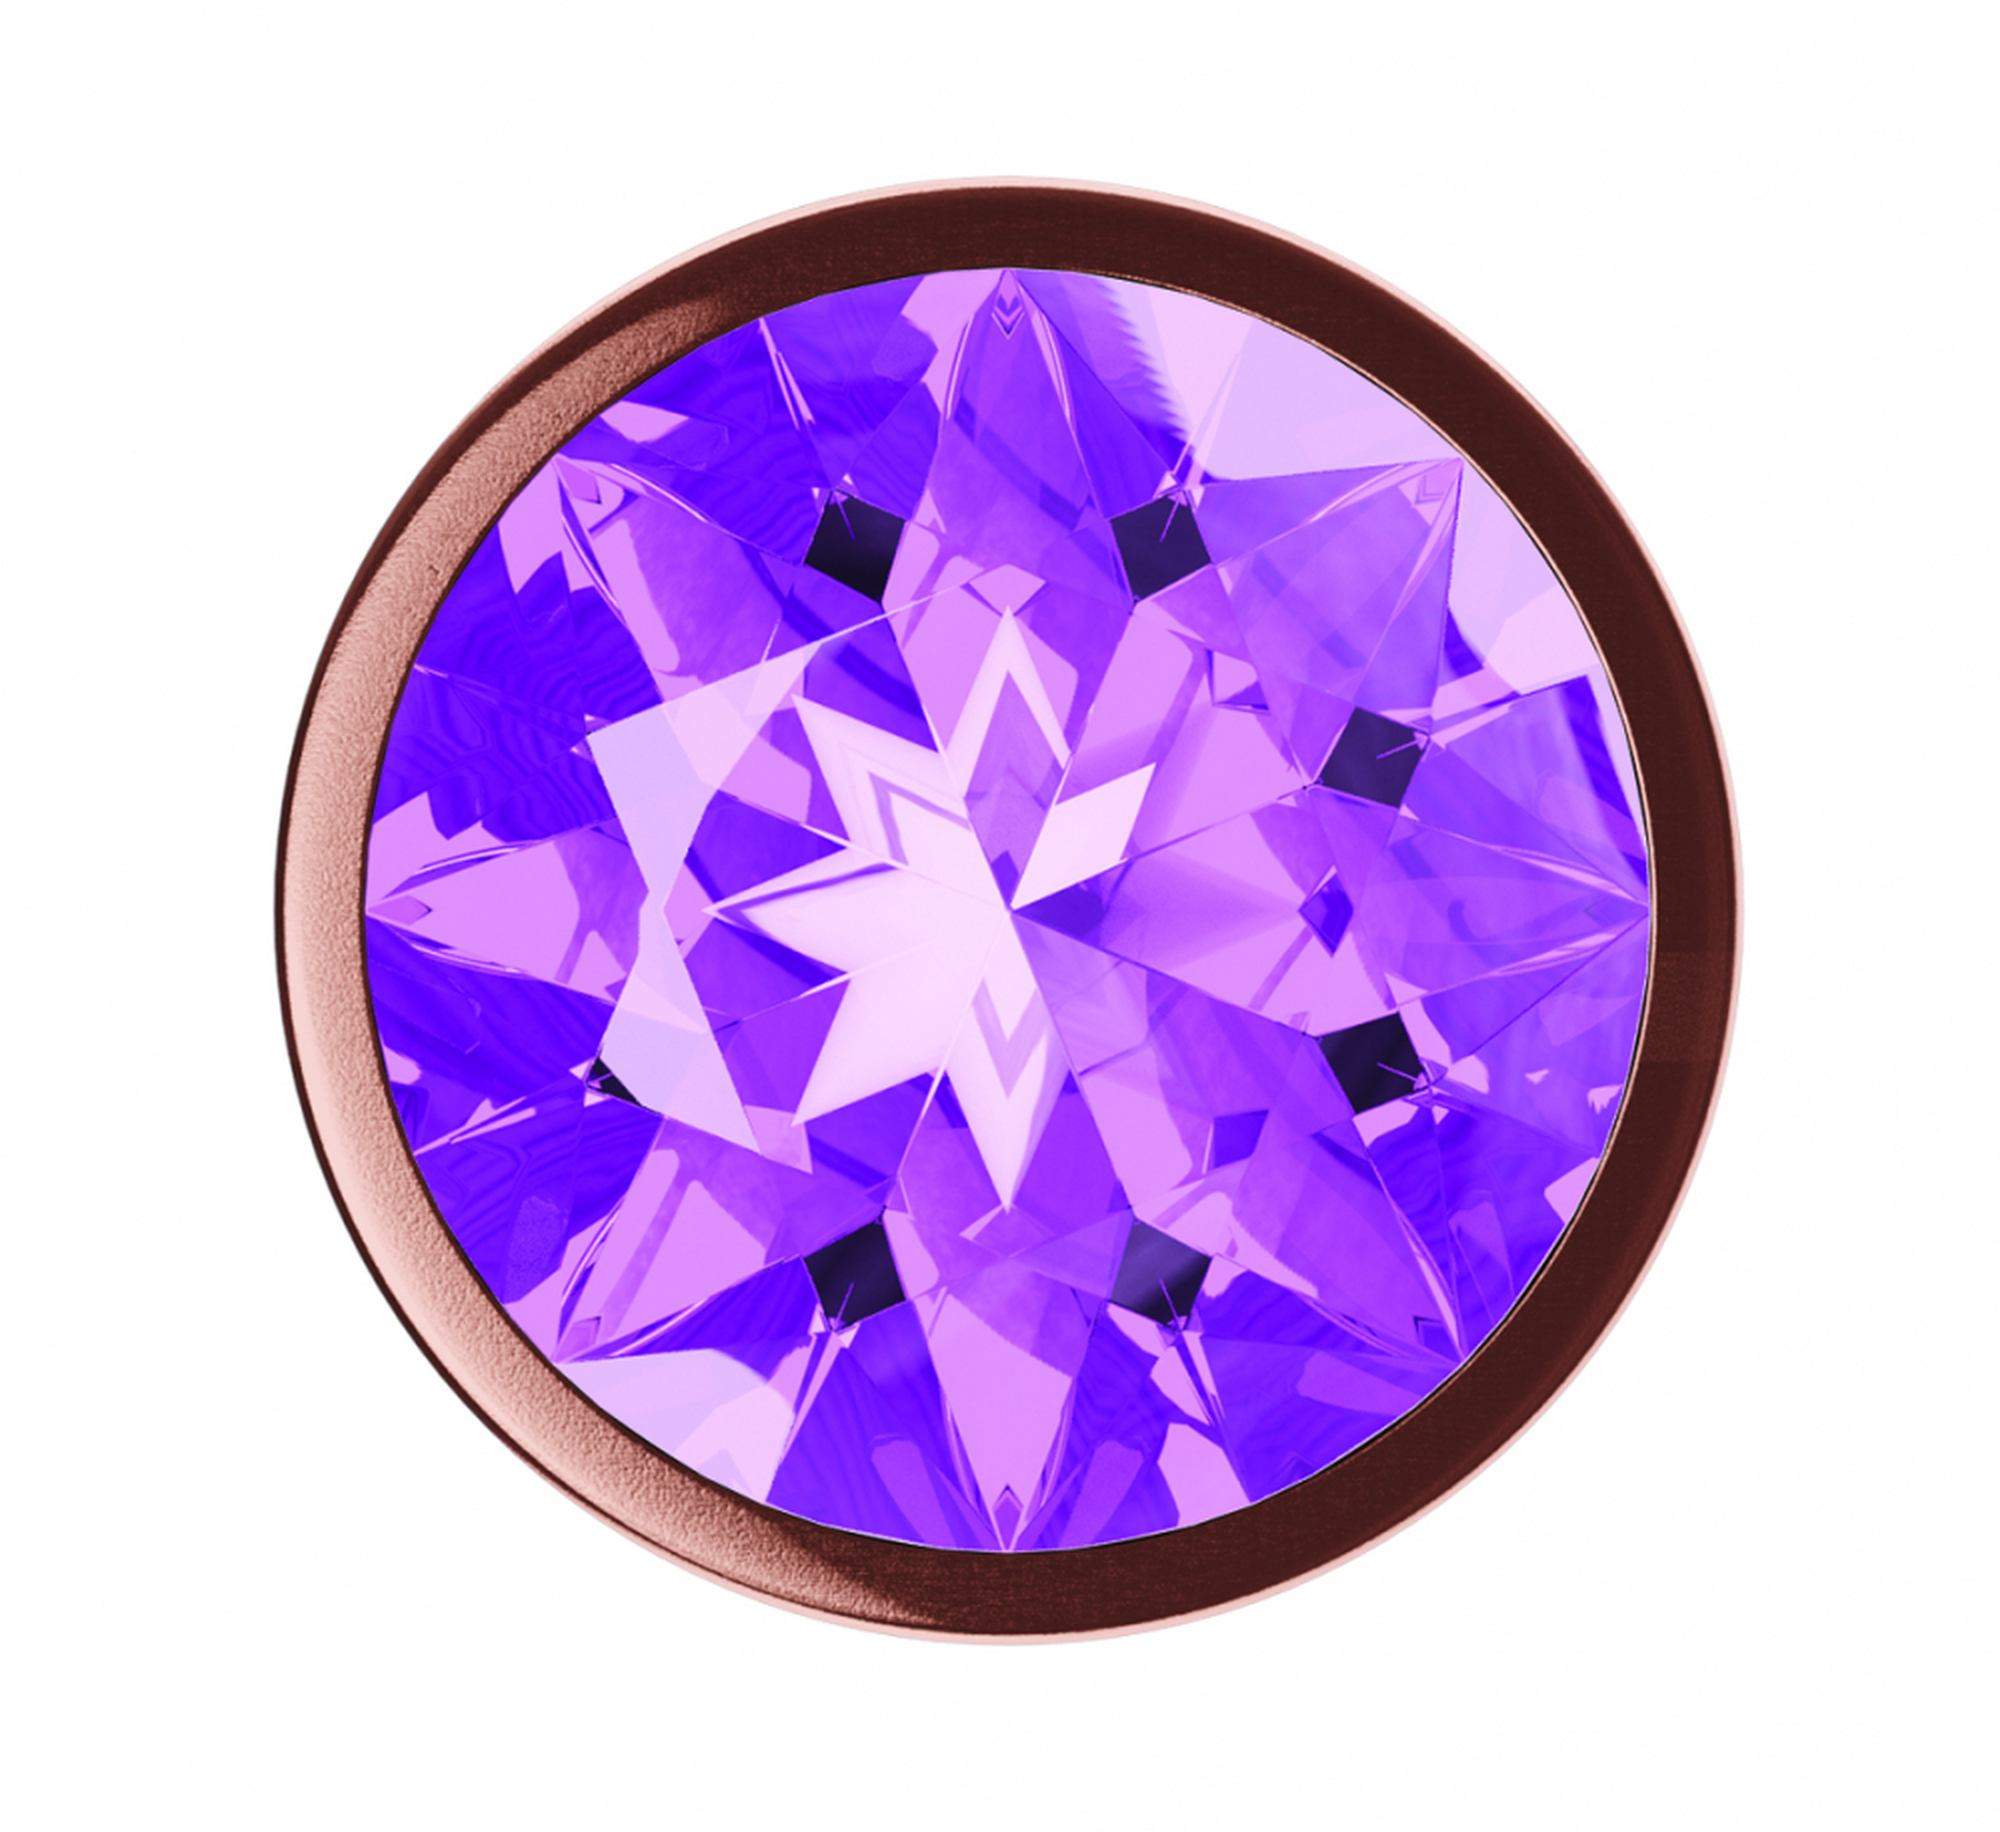 Korek analny w kolorze różowego złota z fioletowym diamencikiem- rozmiar S